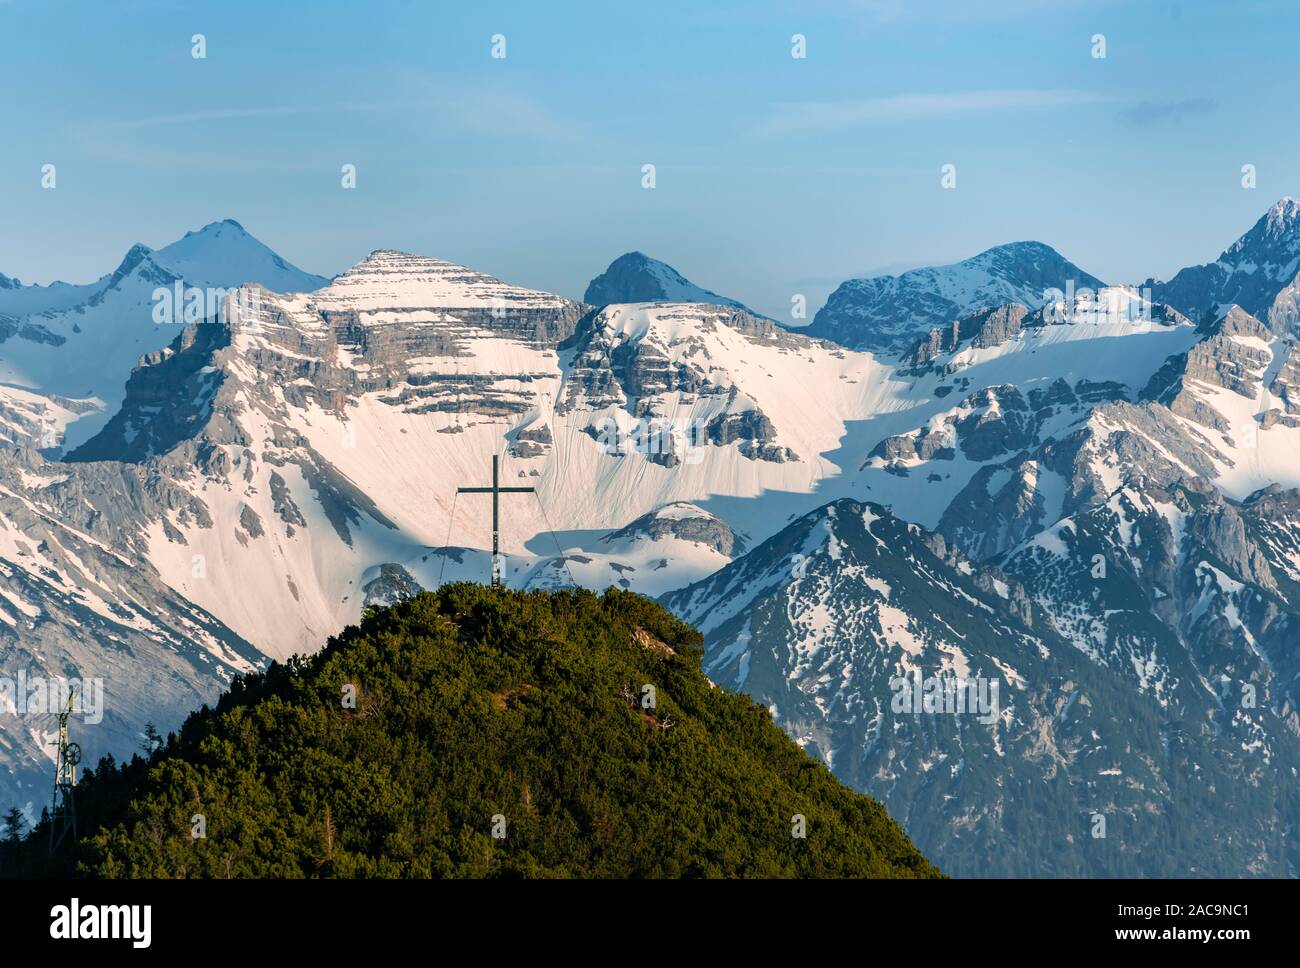 Gipfelkreuz am Martinskopf, Blick vom Herzogstand, Karwendelgebirge auf der Rückseite, schneebedeckte Berge, Bayern, Deutschland Stockfoto